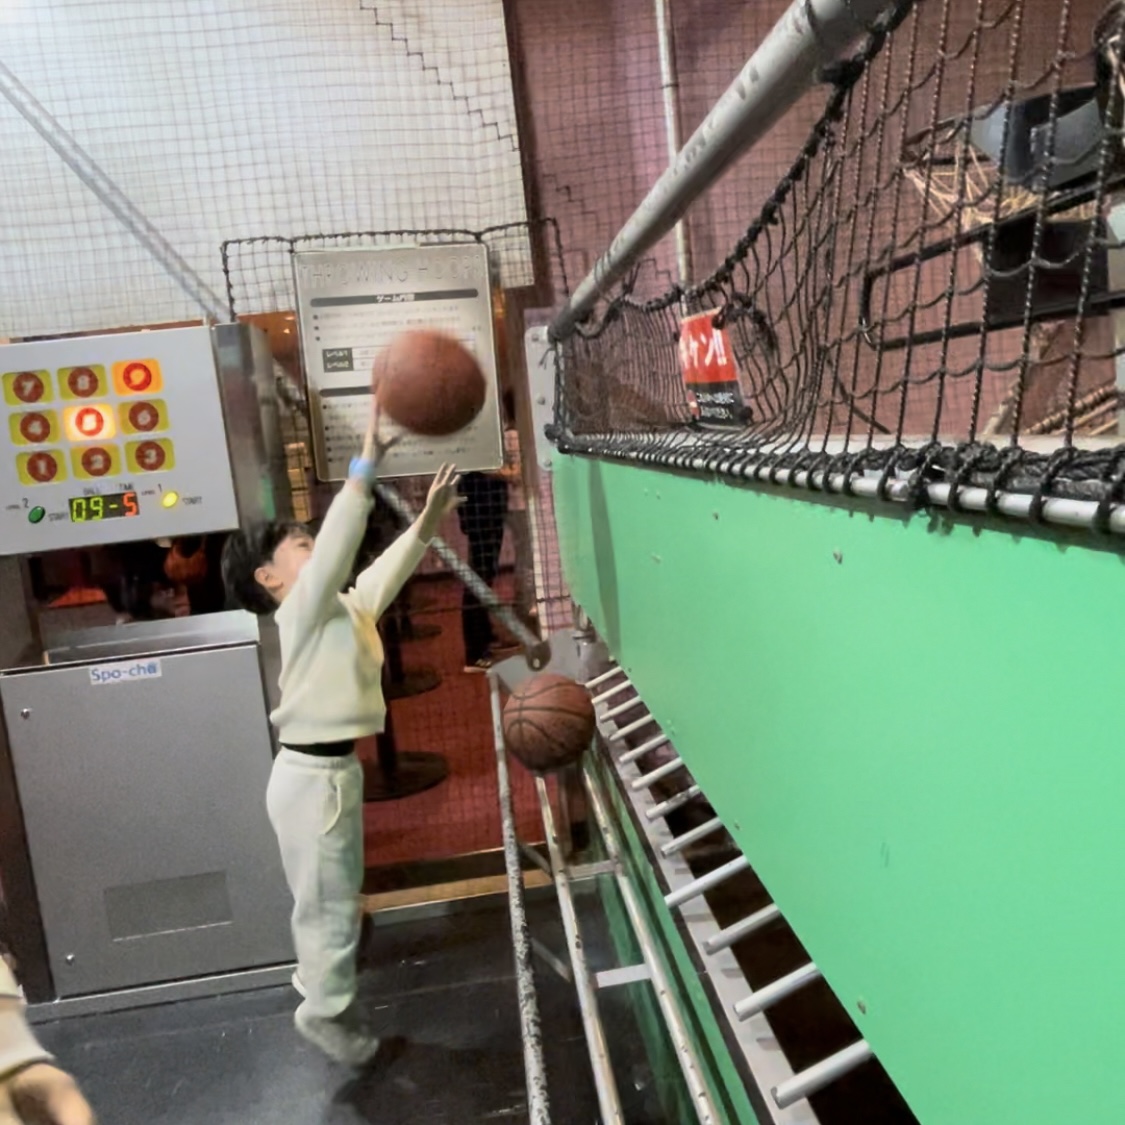 スポッチャダイバーシティ東京プラザ店。バスケットボールで遊ぶパパと息子。